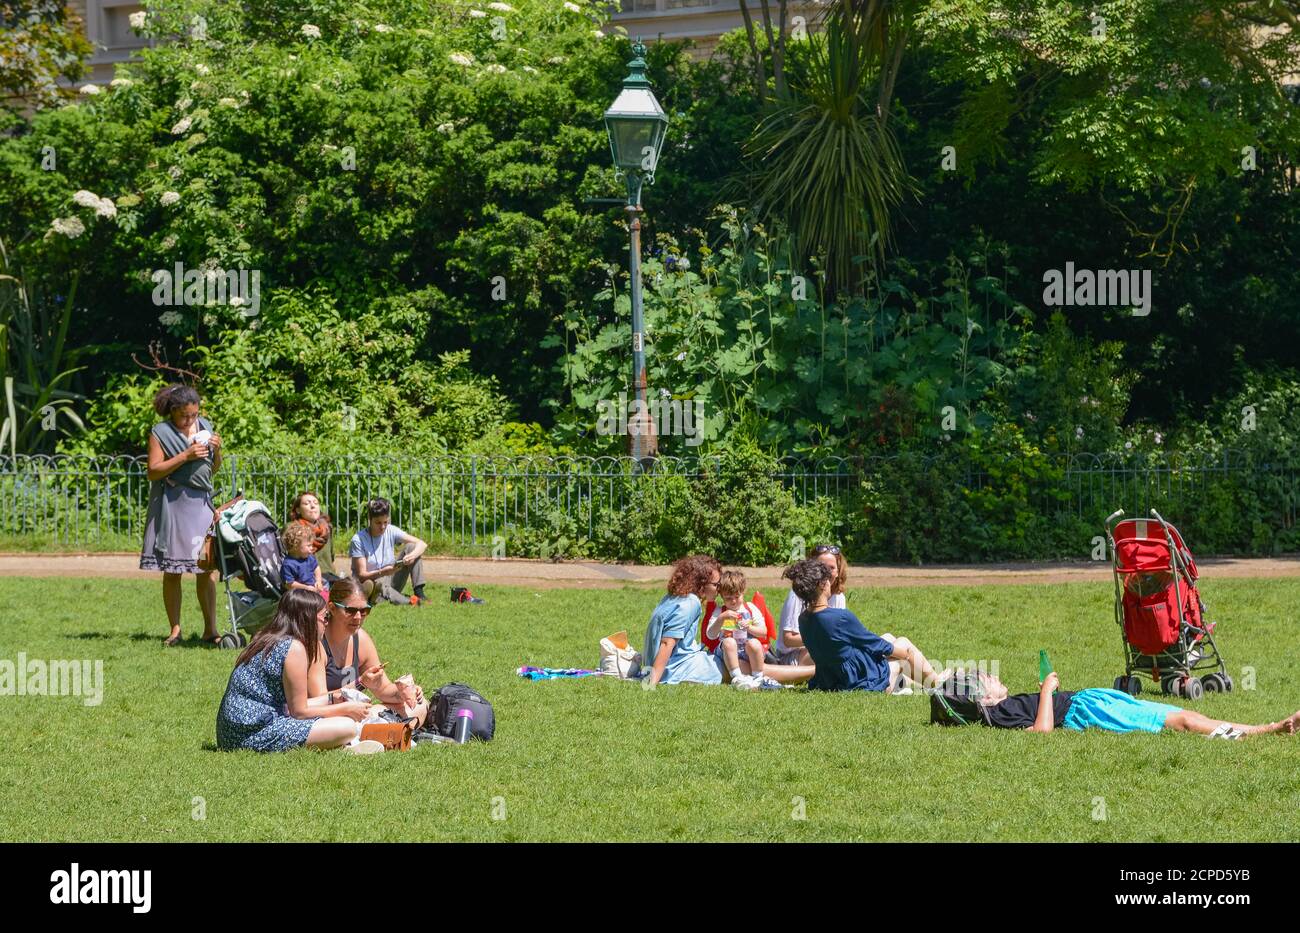 Personnes assises sur l'herbe dans le parc au Royal Pavilion Gardens lors d'une journée chaude en été à Brighton, East Sussex, Angleterre, Royaume-Uni. Banque D'Images